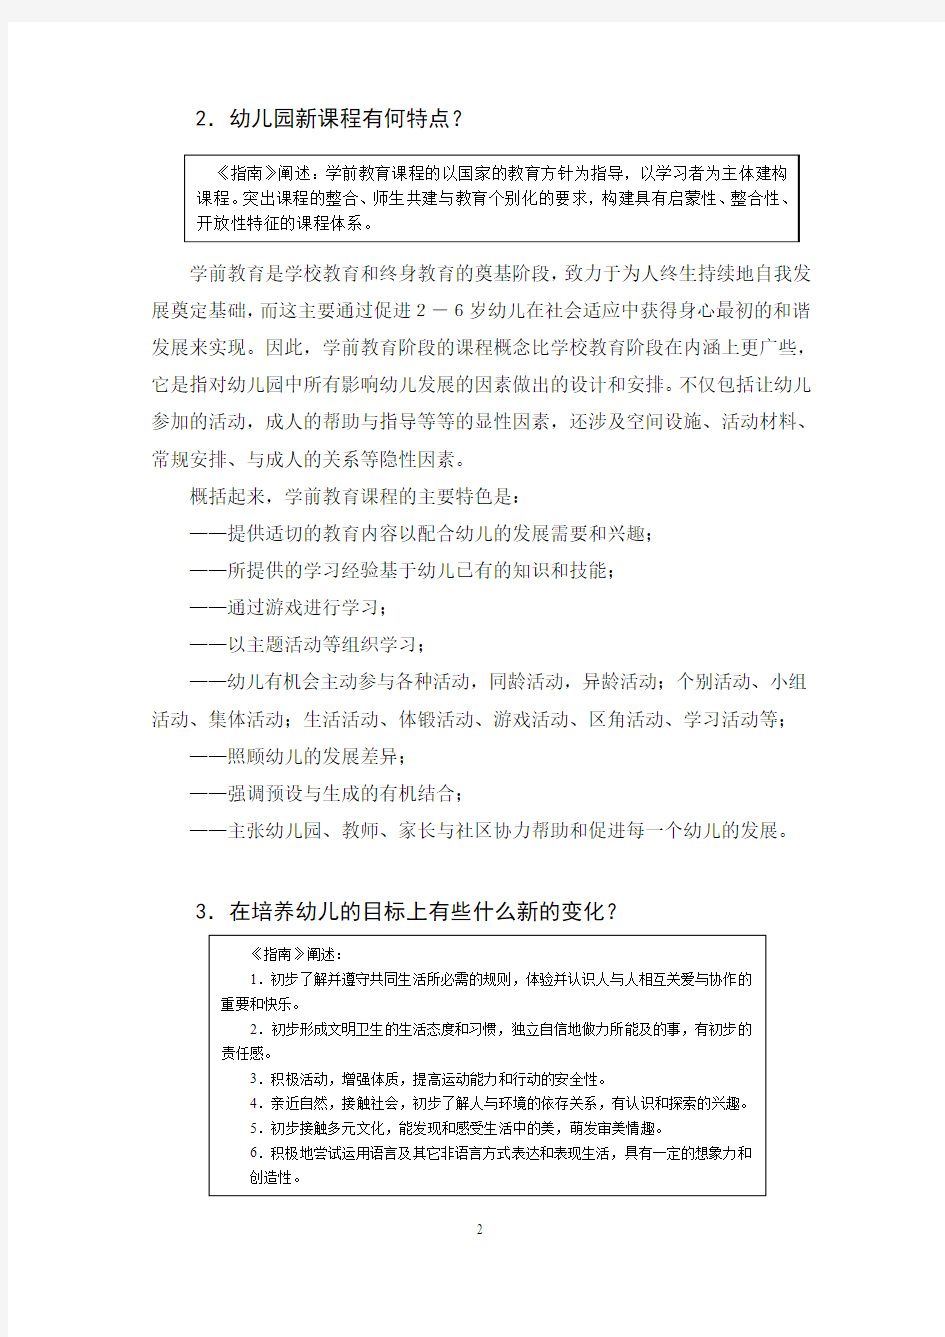 《上海市学前教育课程指南(试行稿)》说明